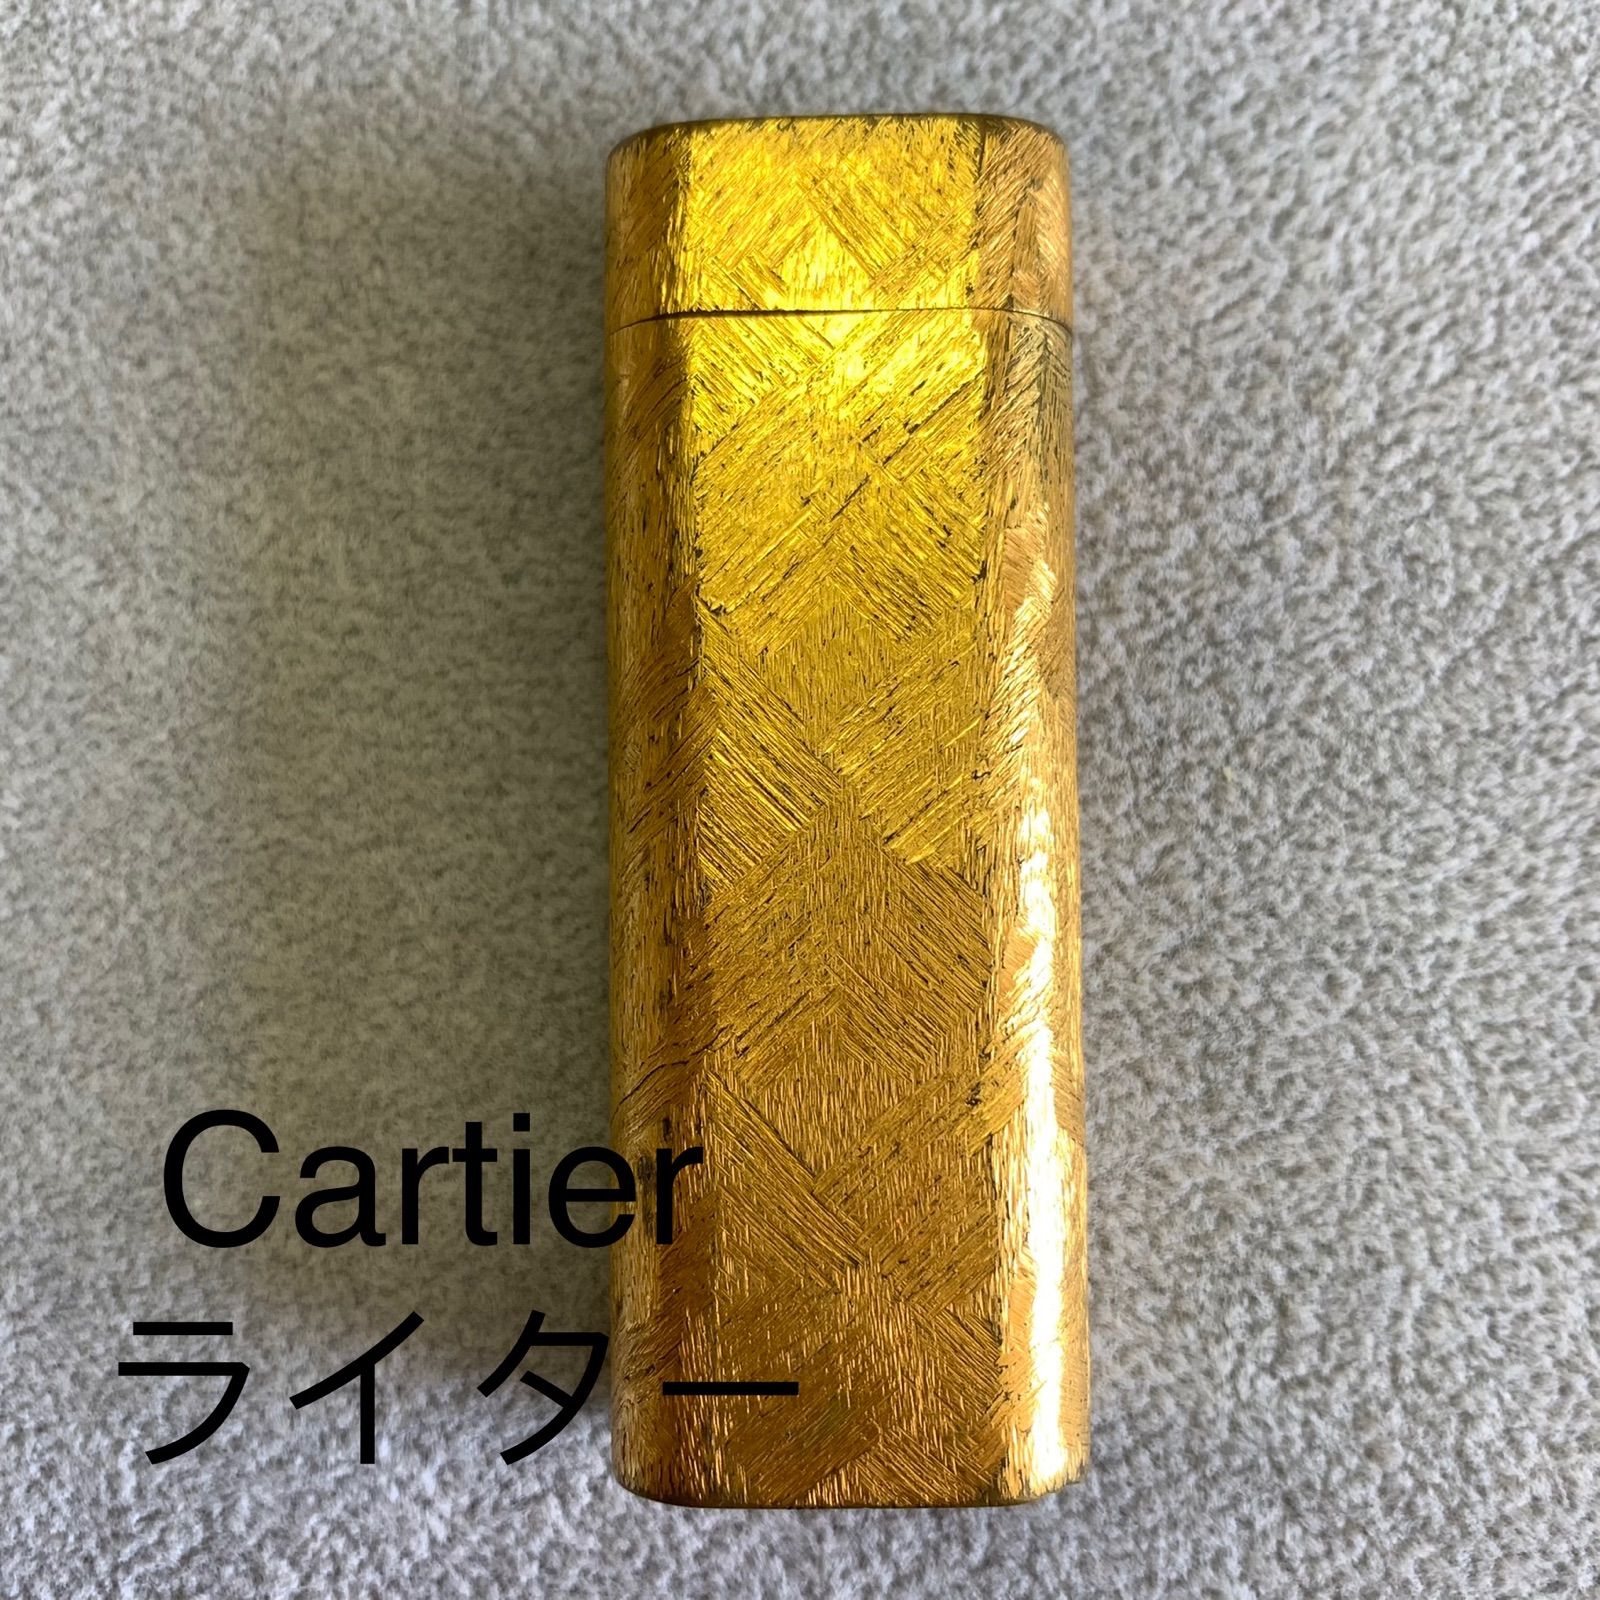 低価100%新品Cartierのライター 喫煙具・ライター